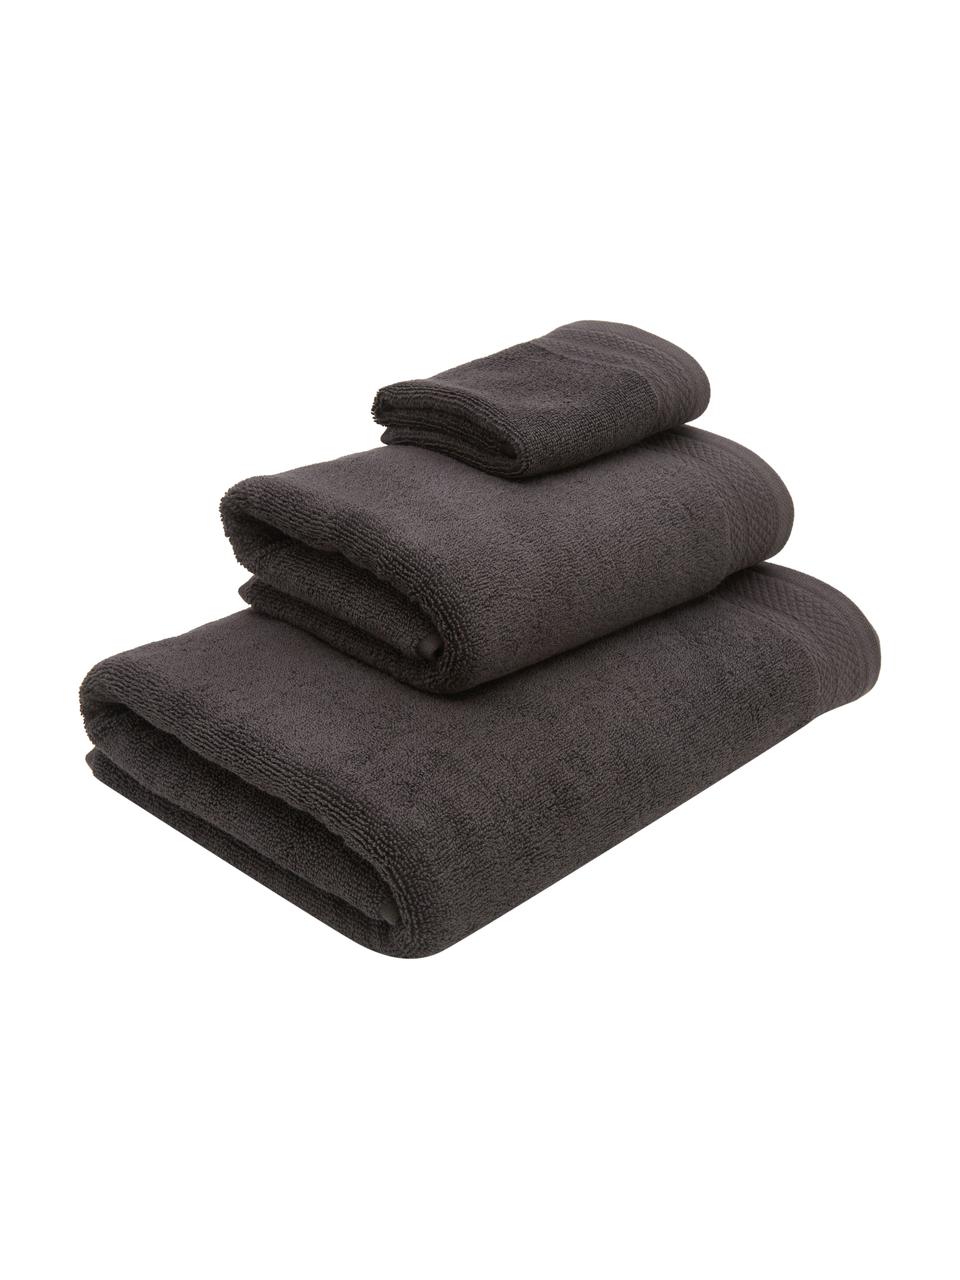 Set 3 asciugamani con bordo decorativo classico Premium, 100% cotone biologico, certificato GOTS
Qualità pesante, 600 g/m², Antracite, Set in varie misure